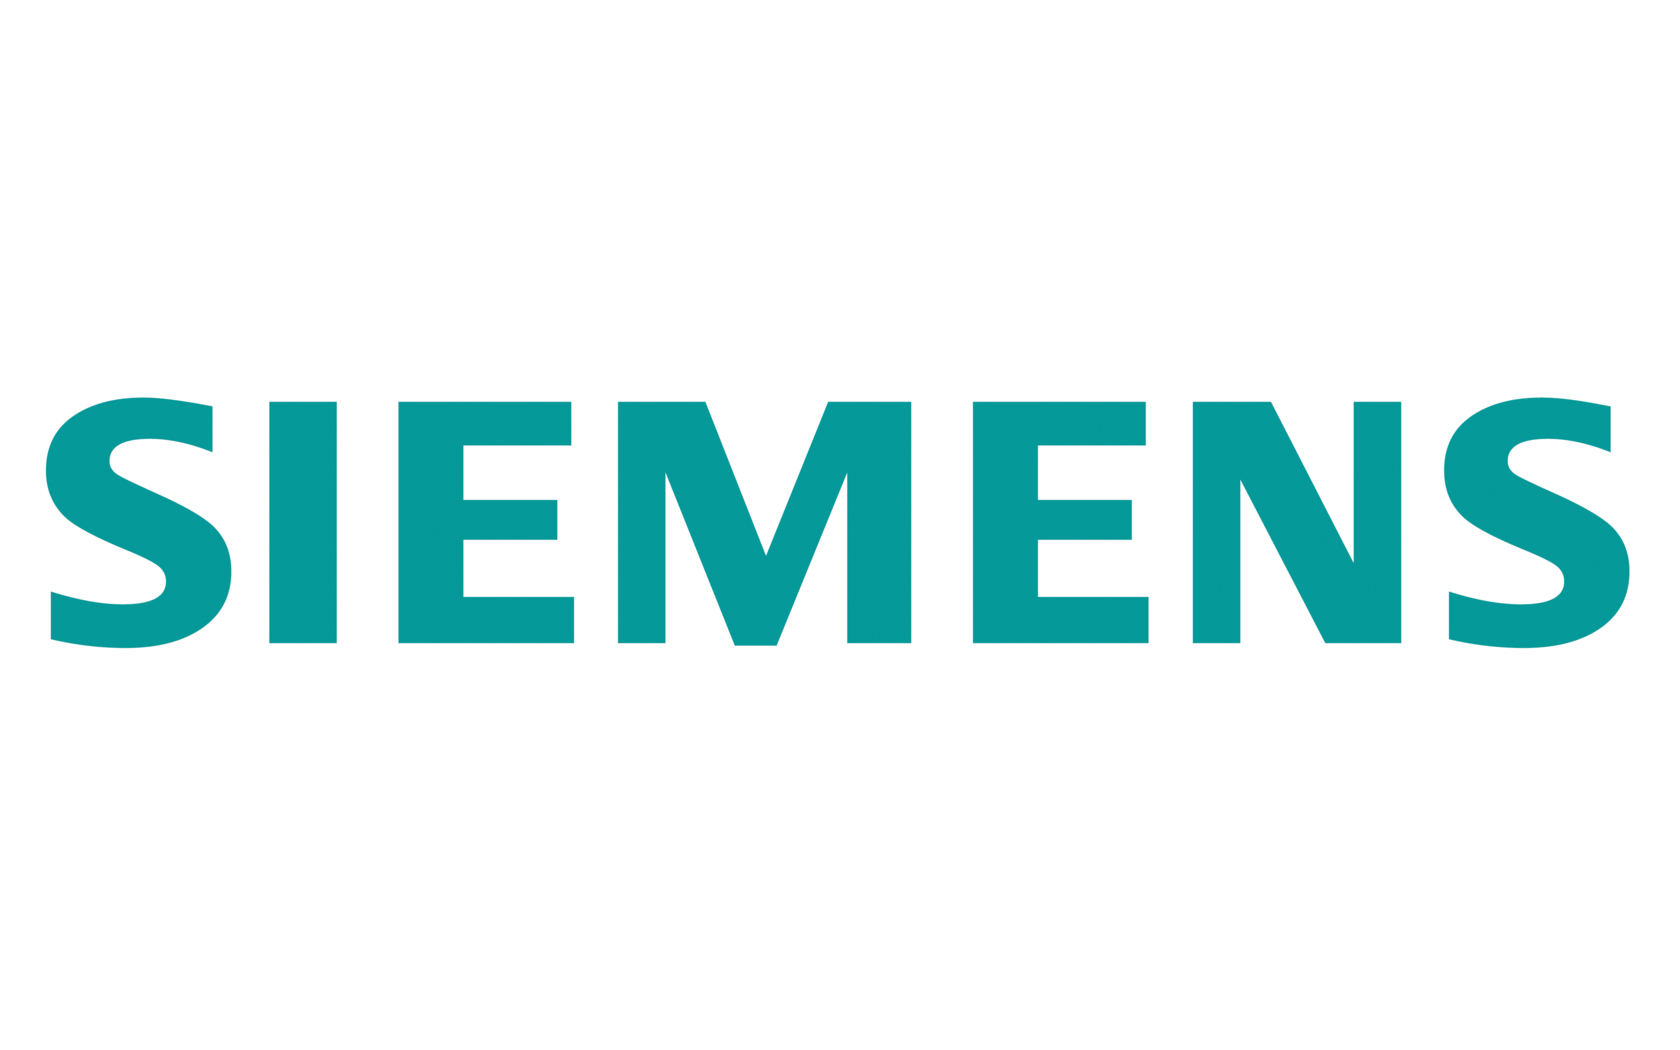 Logo of Siemens AG